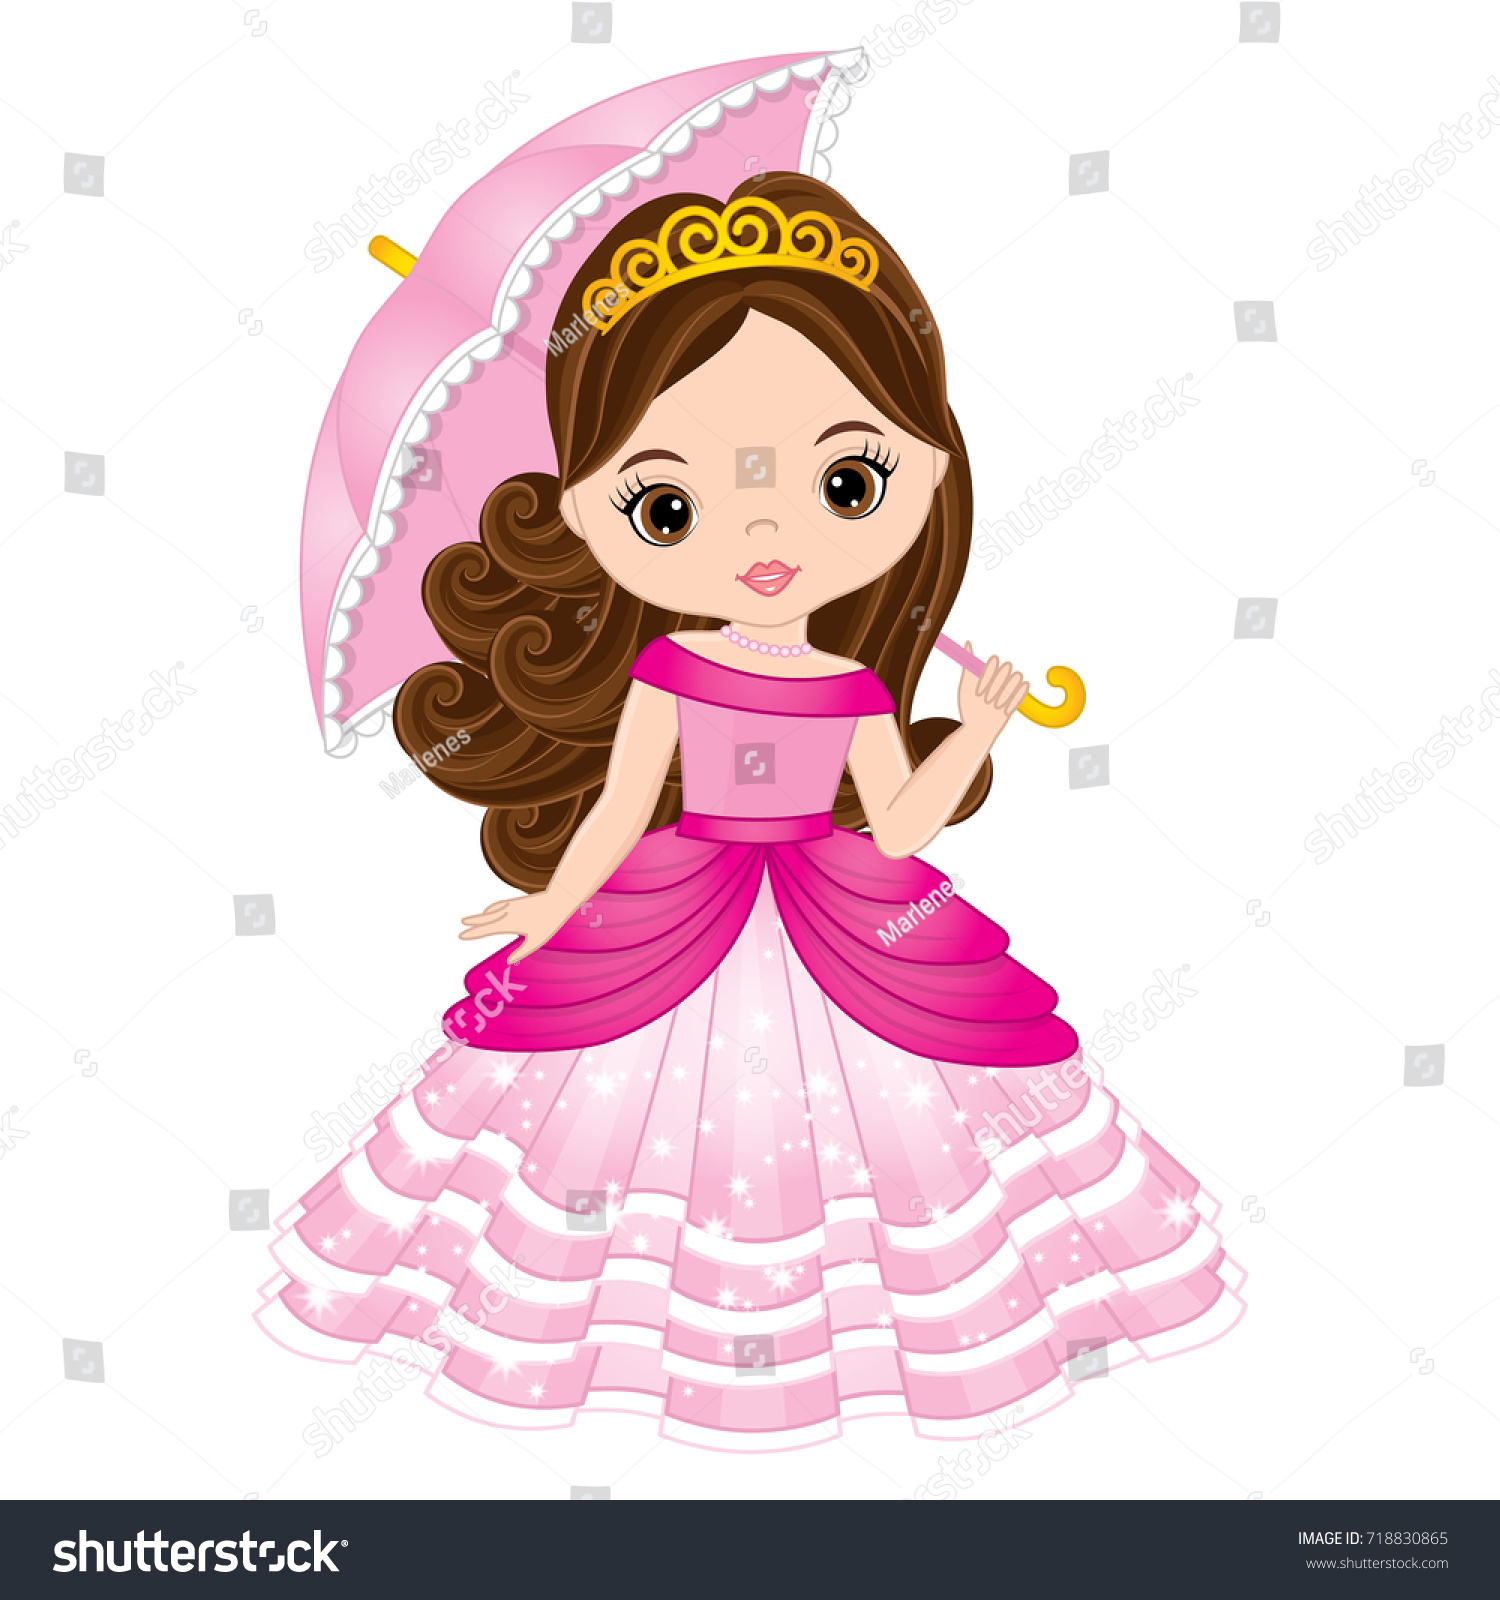 ピンクのドレスに傘を差したベクター画像の美しい姫様 ベクター